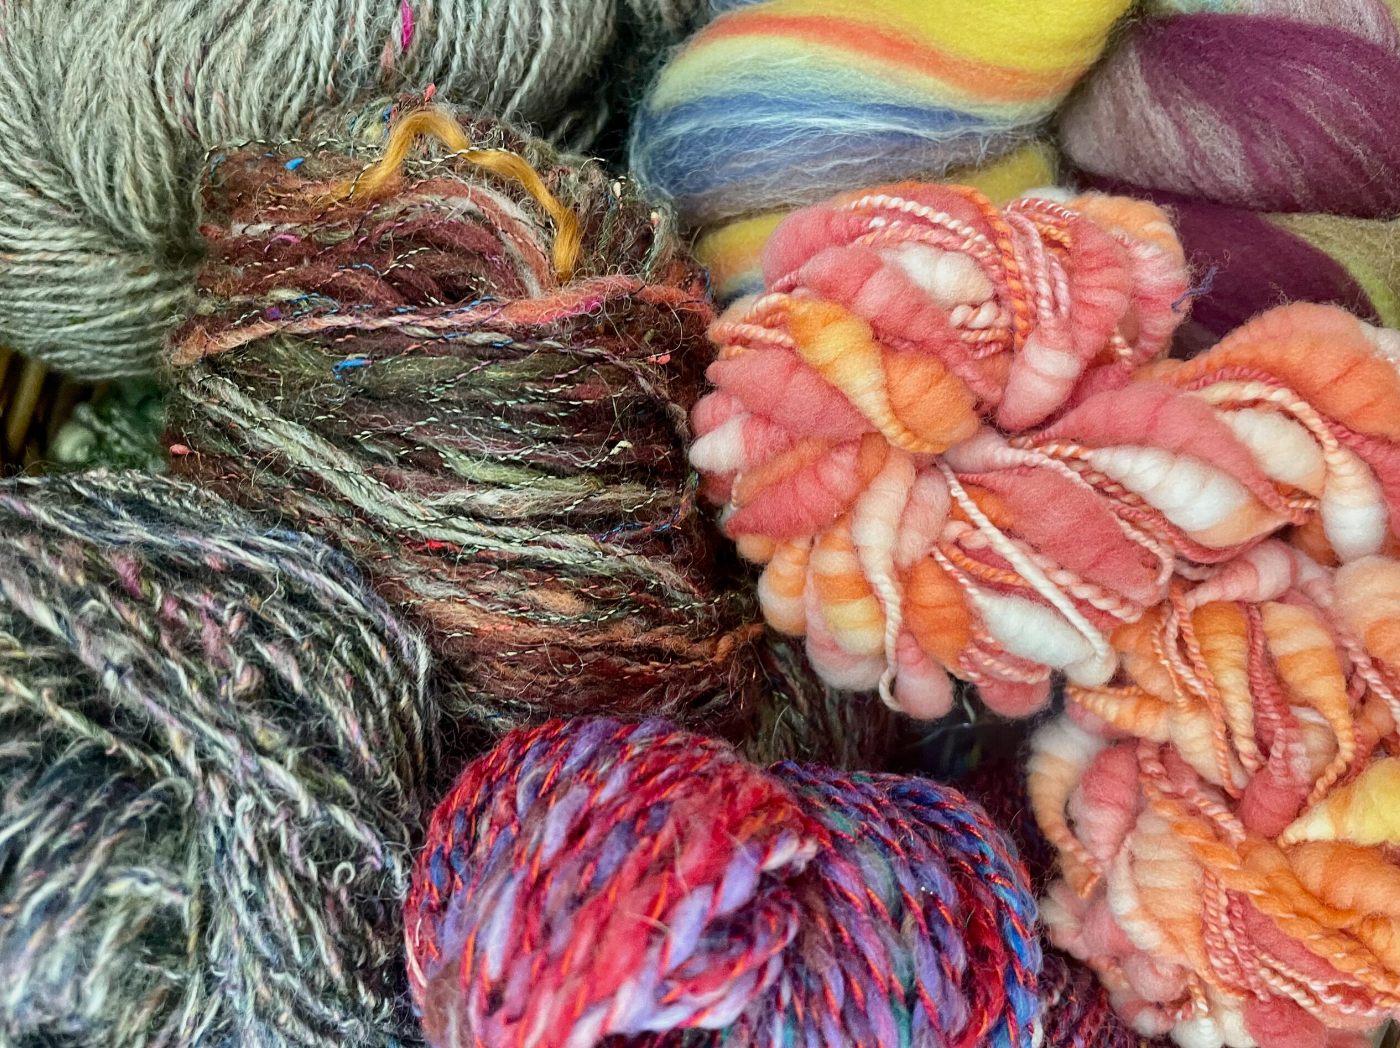 handspun yarn for weaving or knitting